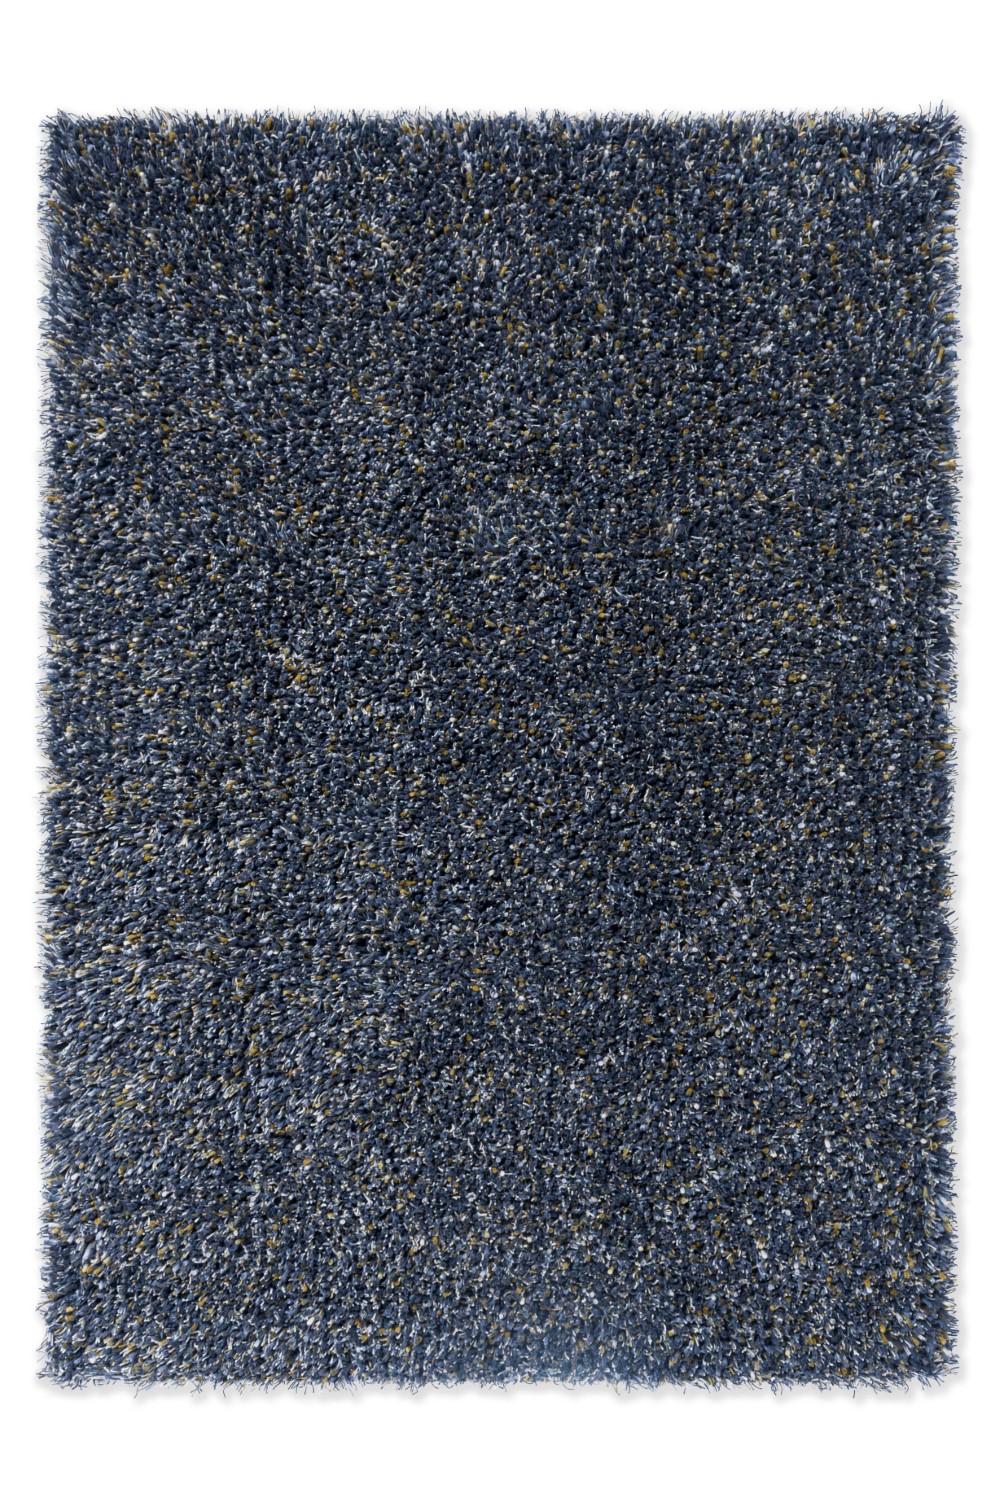 brink-campman-rug-spring-blue-note-059114